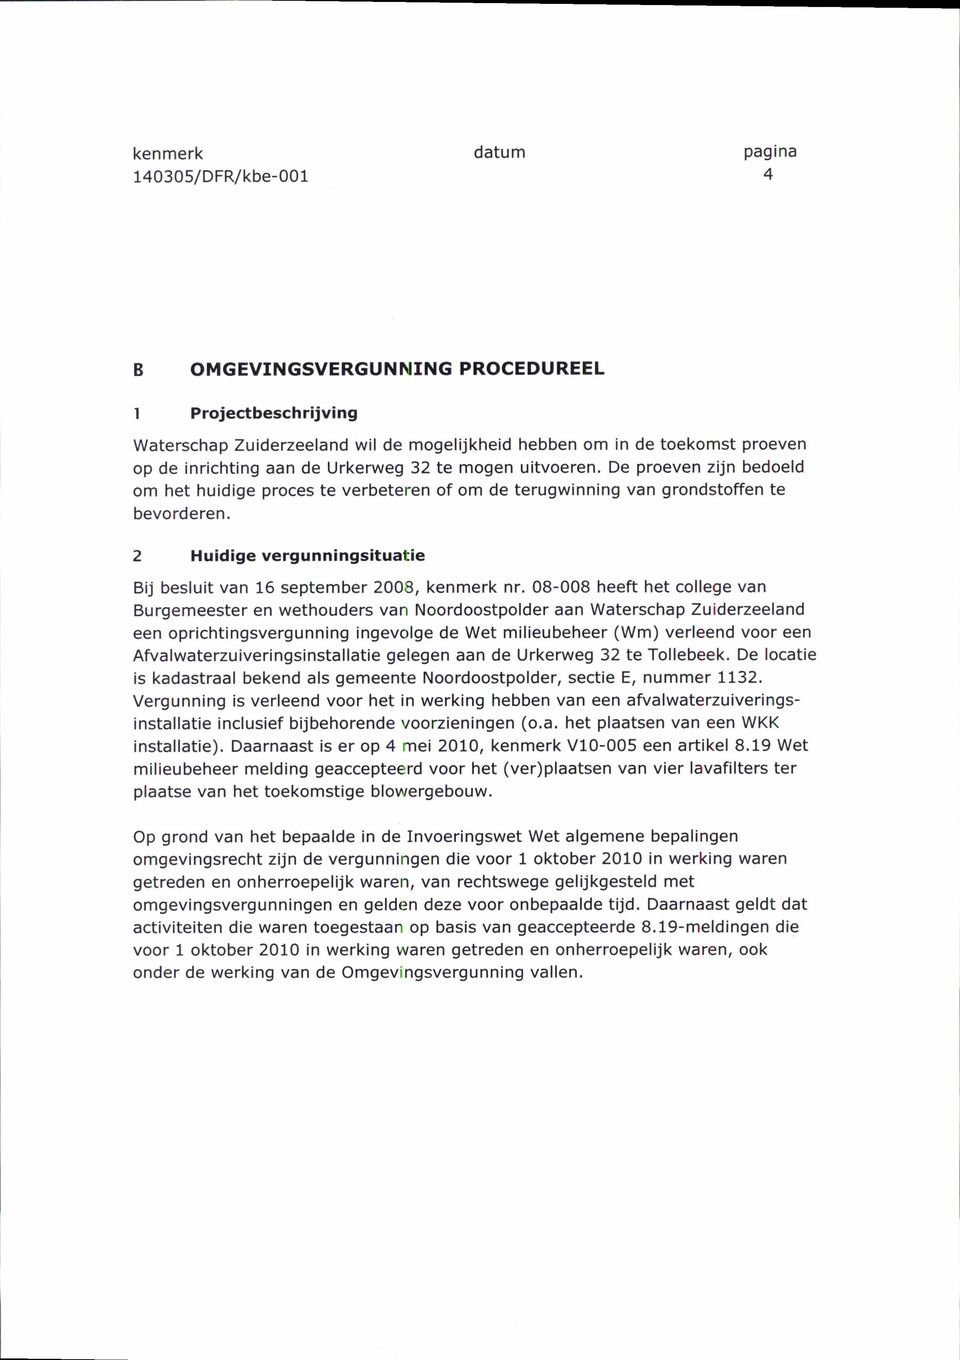 08-008 heeft het college van Burgemeester en wethouders van Noordoostpolder aan Waterschap Zuiderzeeland een oprichtingsvergunning ingevolge de Wet milieubeheer (Wm) verleend voor een